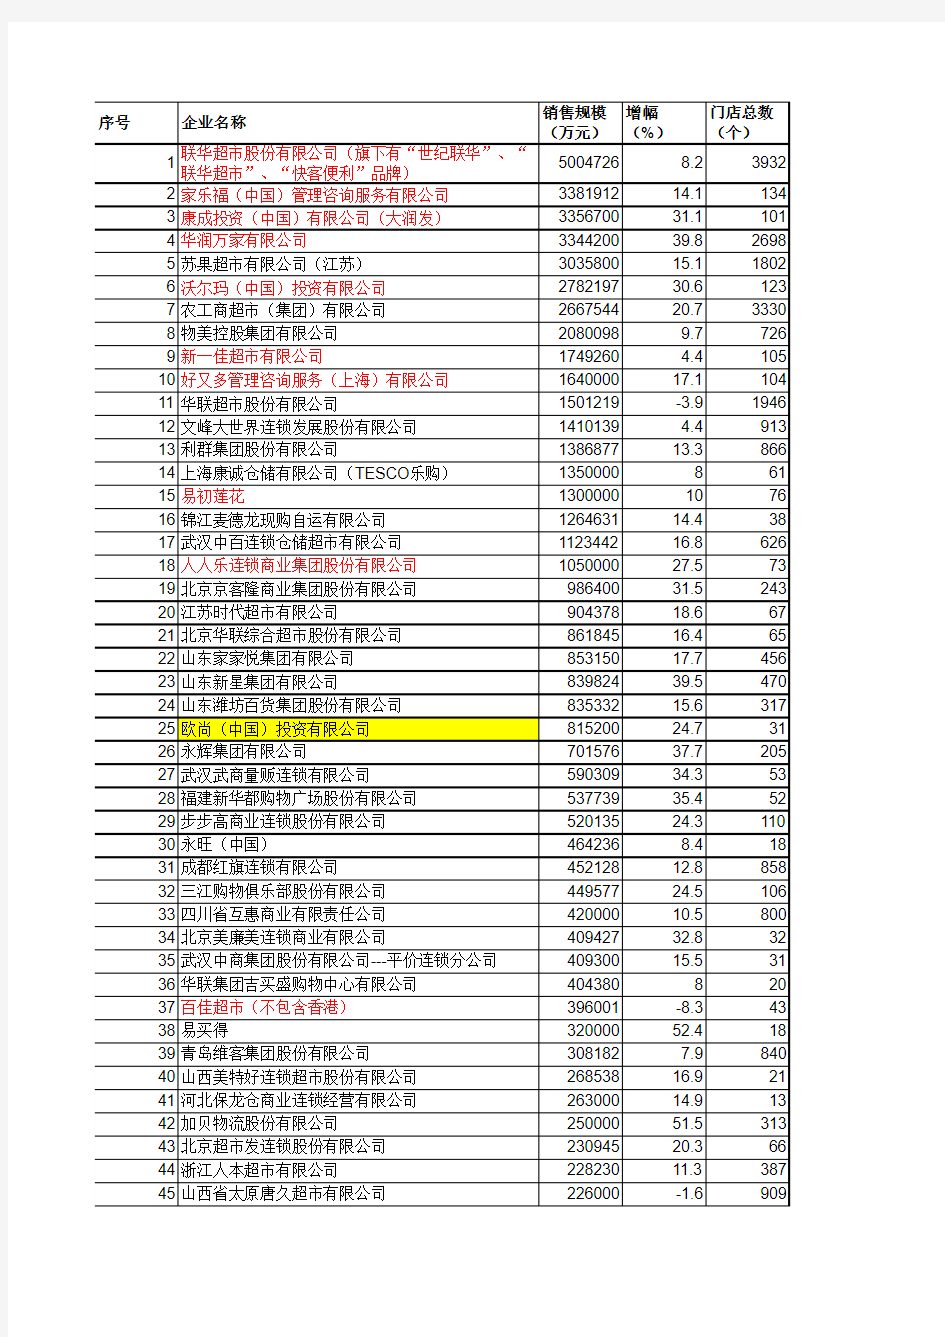 中国前100位连锁超市排名、门店及具体销量.xls